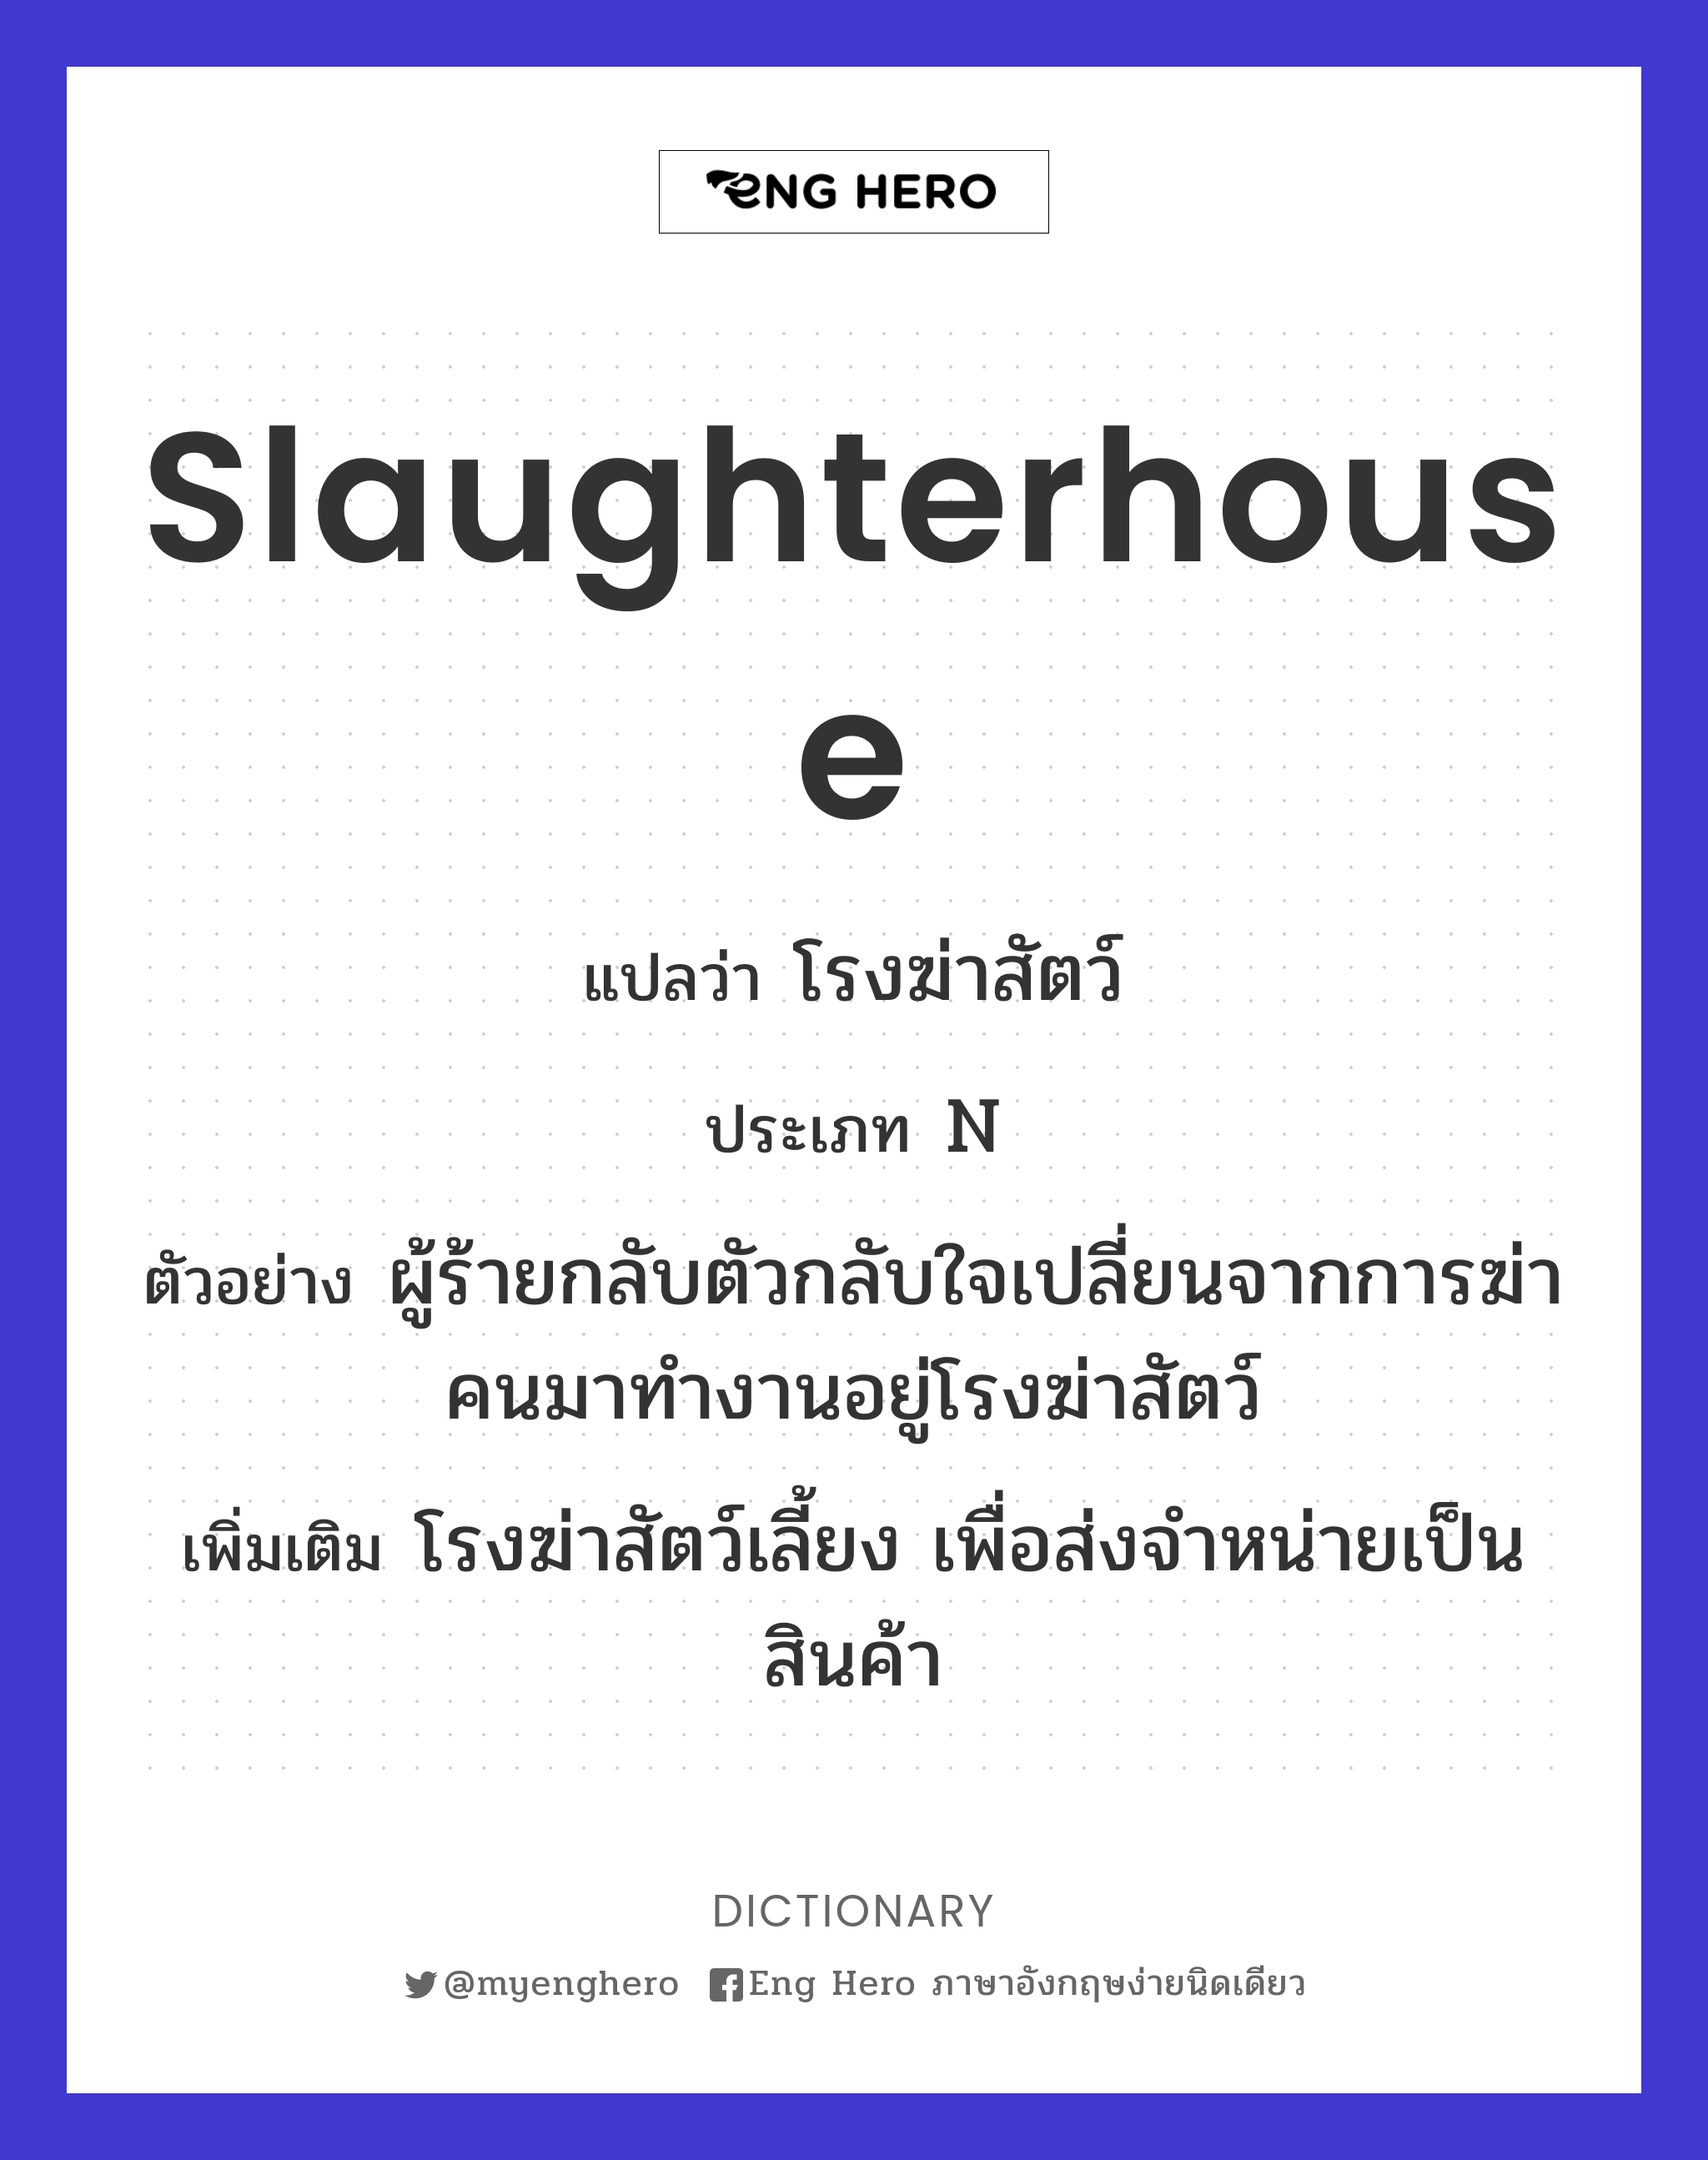 slaughterhouse